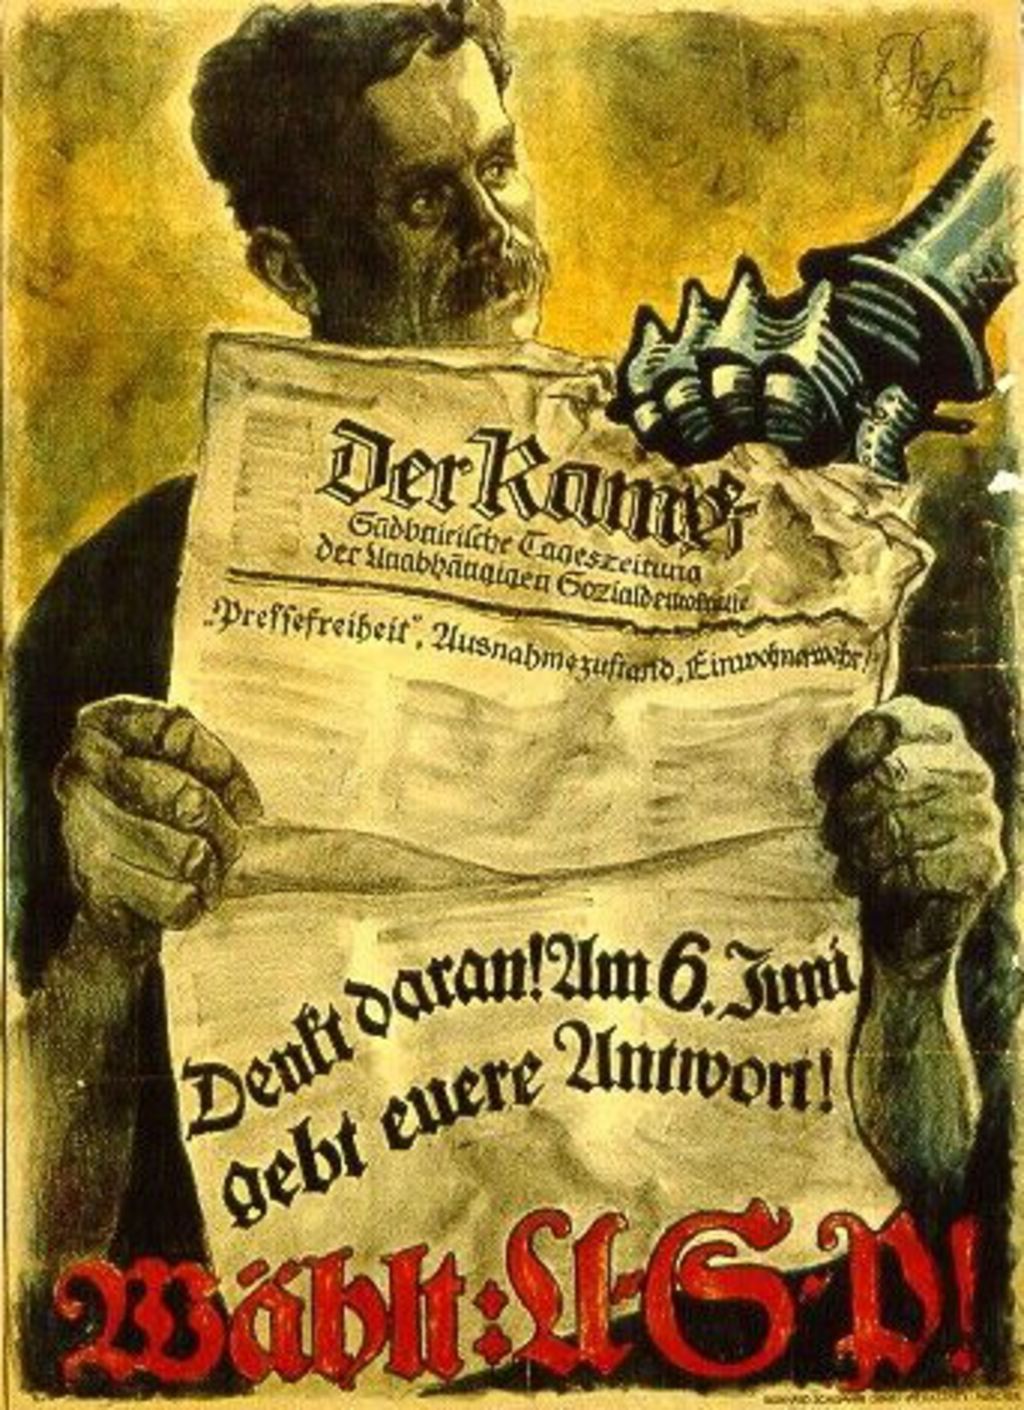 Exponat: Plakat: "Wählt USP", 1920